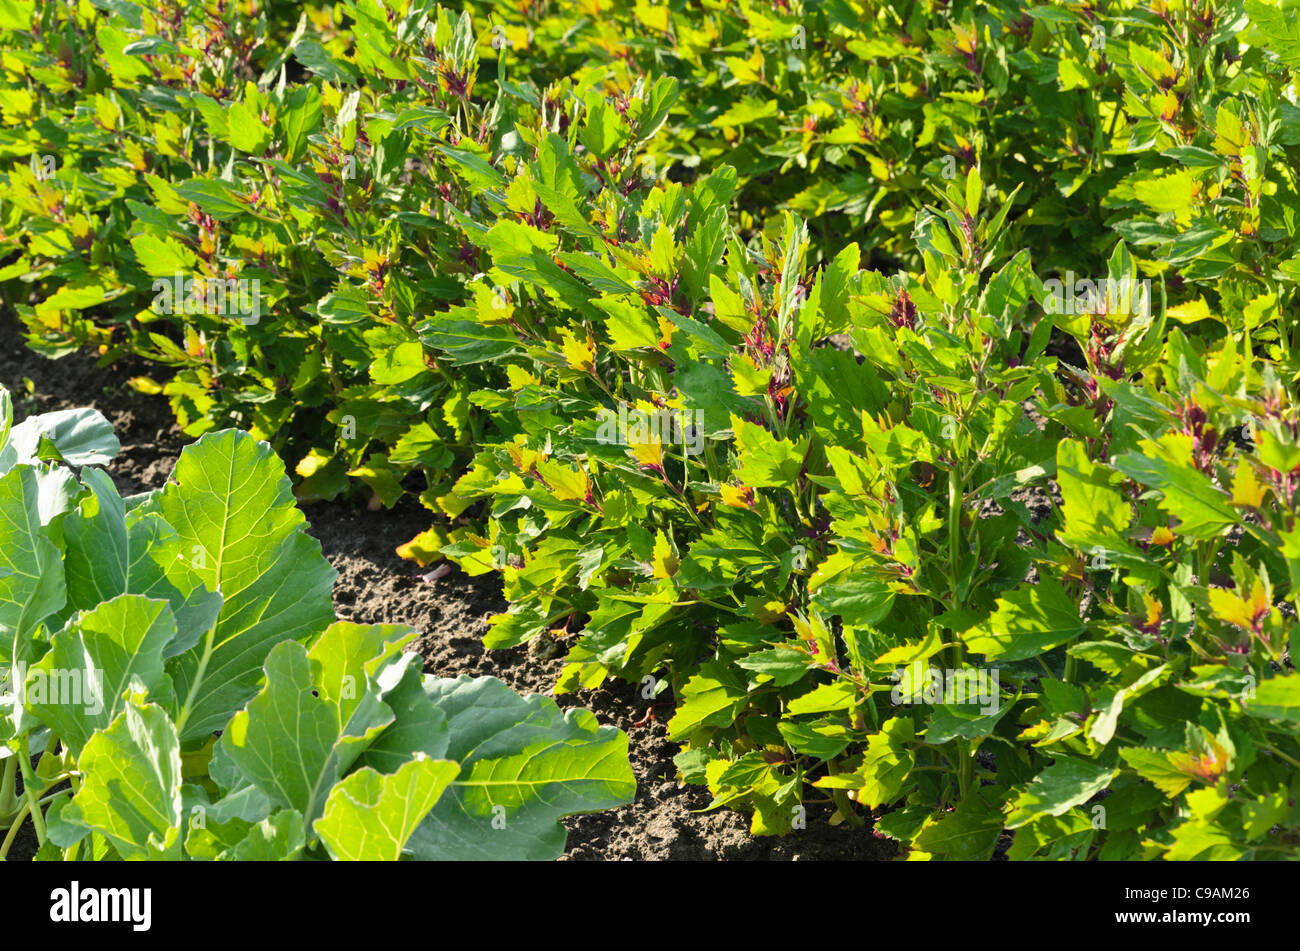 Tree spinach (Chenopodium giganteum 'Magentaspreen') Stock Photo